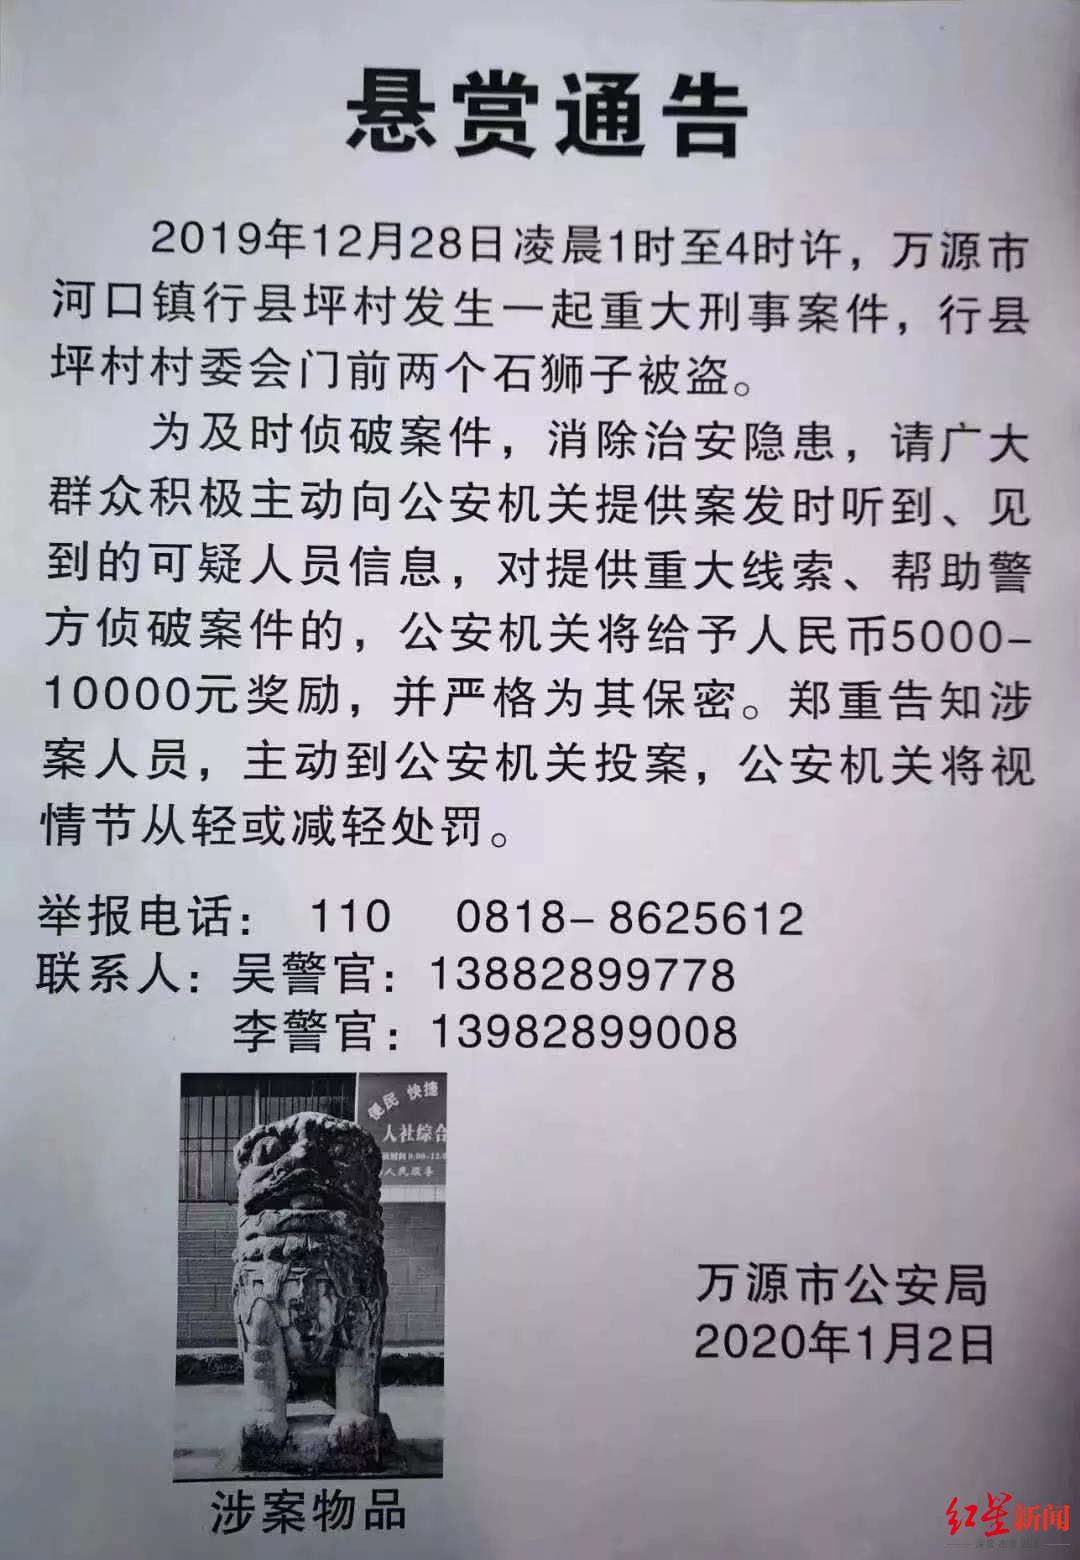 包含北京大学口腔医院贩子联系方式「找对人就有号」【秒出号】的词条